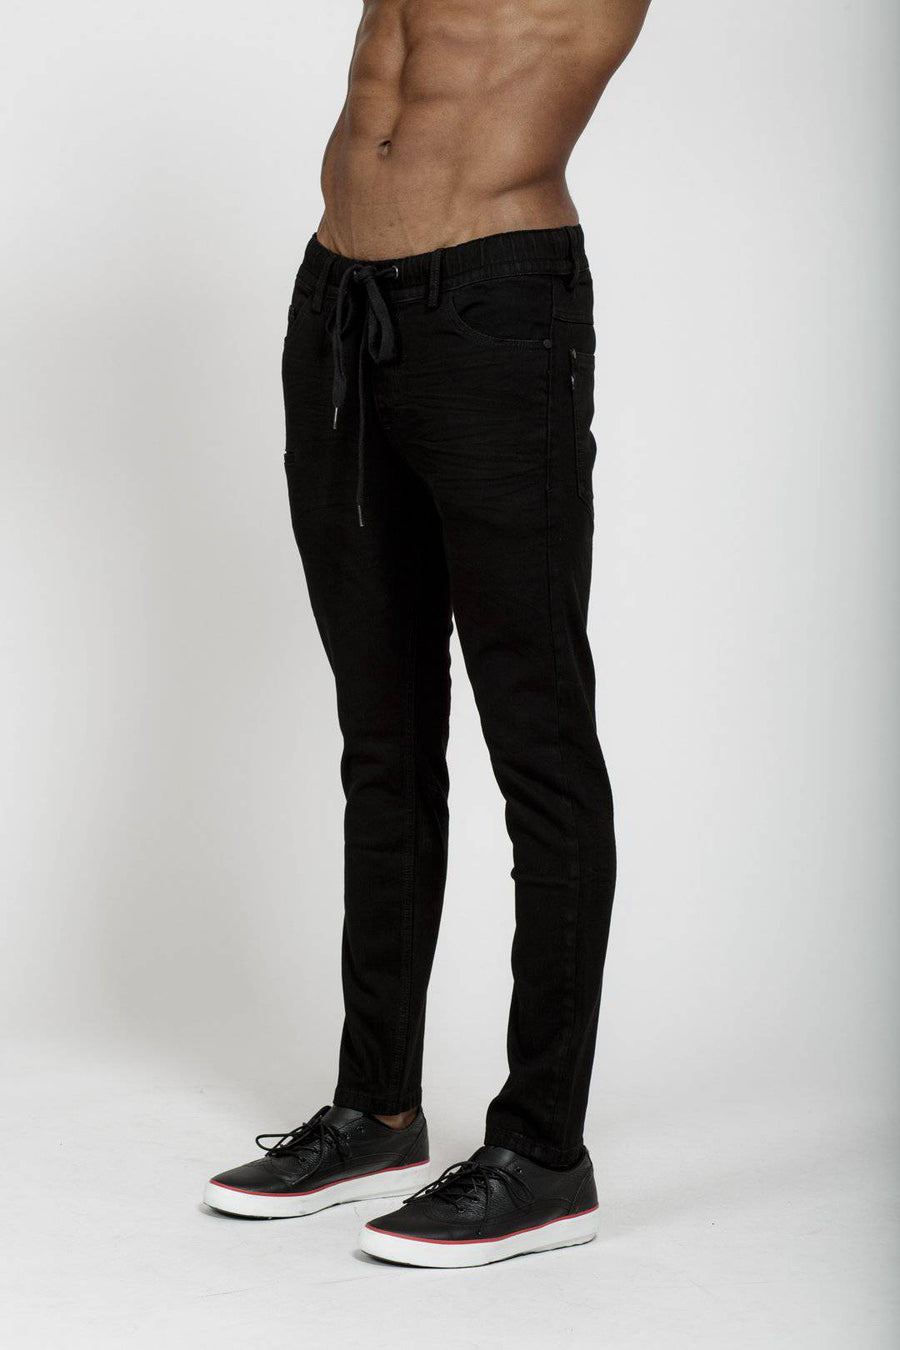 Konus Men's Drawcord Jeans in Black - shopatkonus